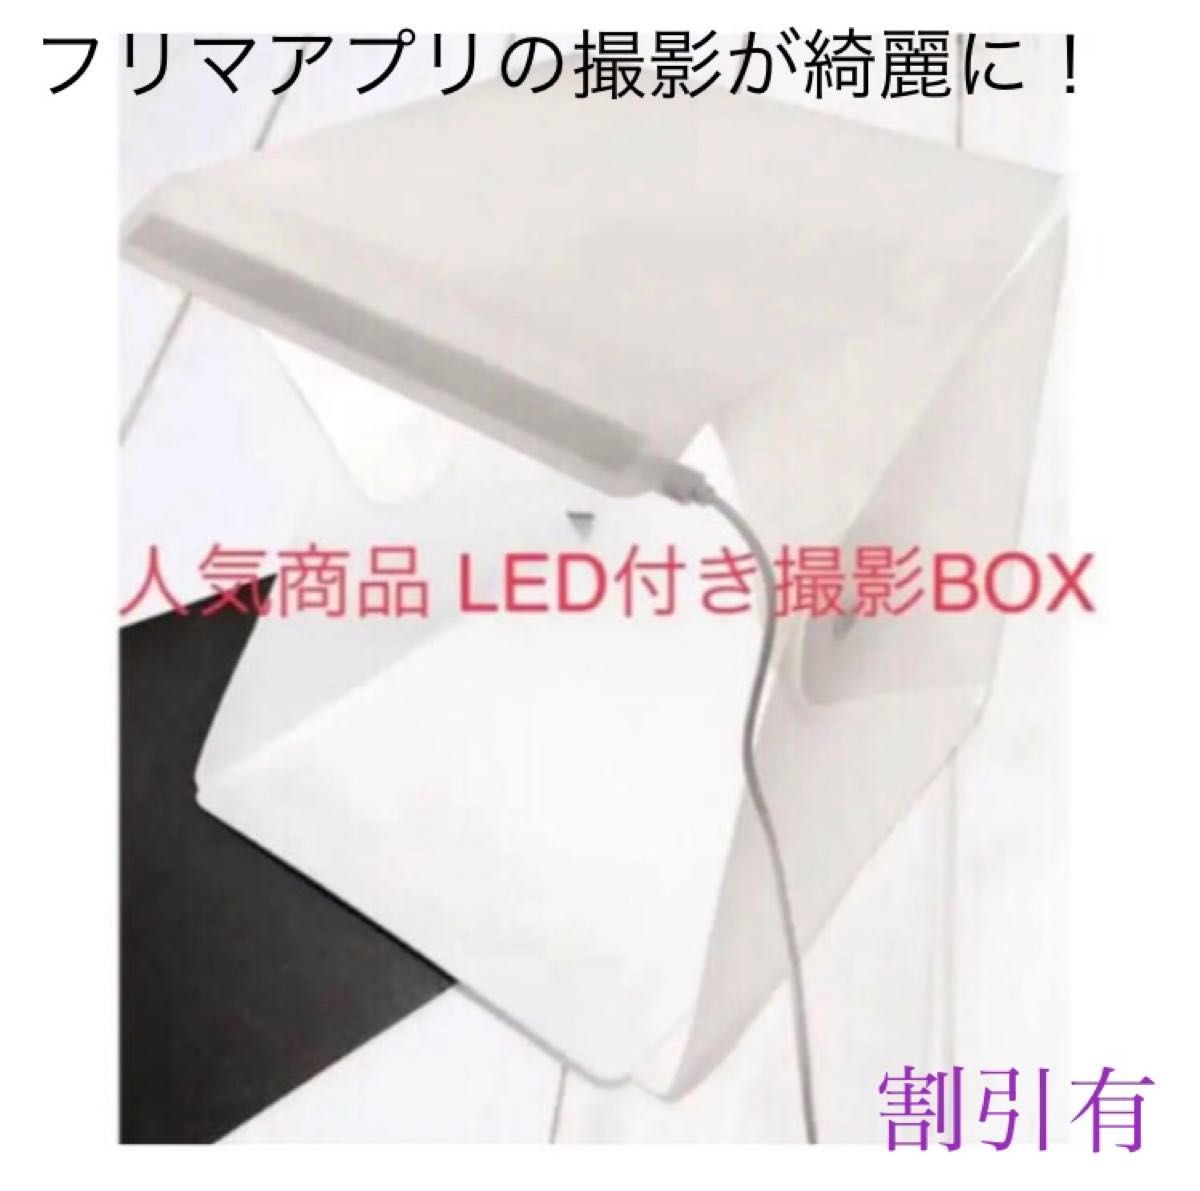 【新品人気品 フリマアプリに 200円割引有】 LED付き撮影BOX 組み立て式